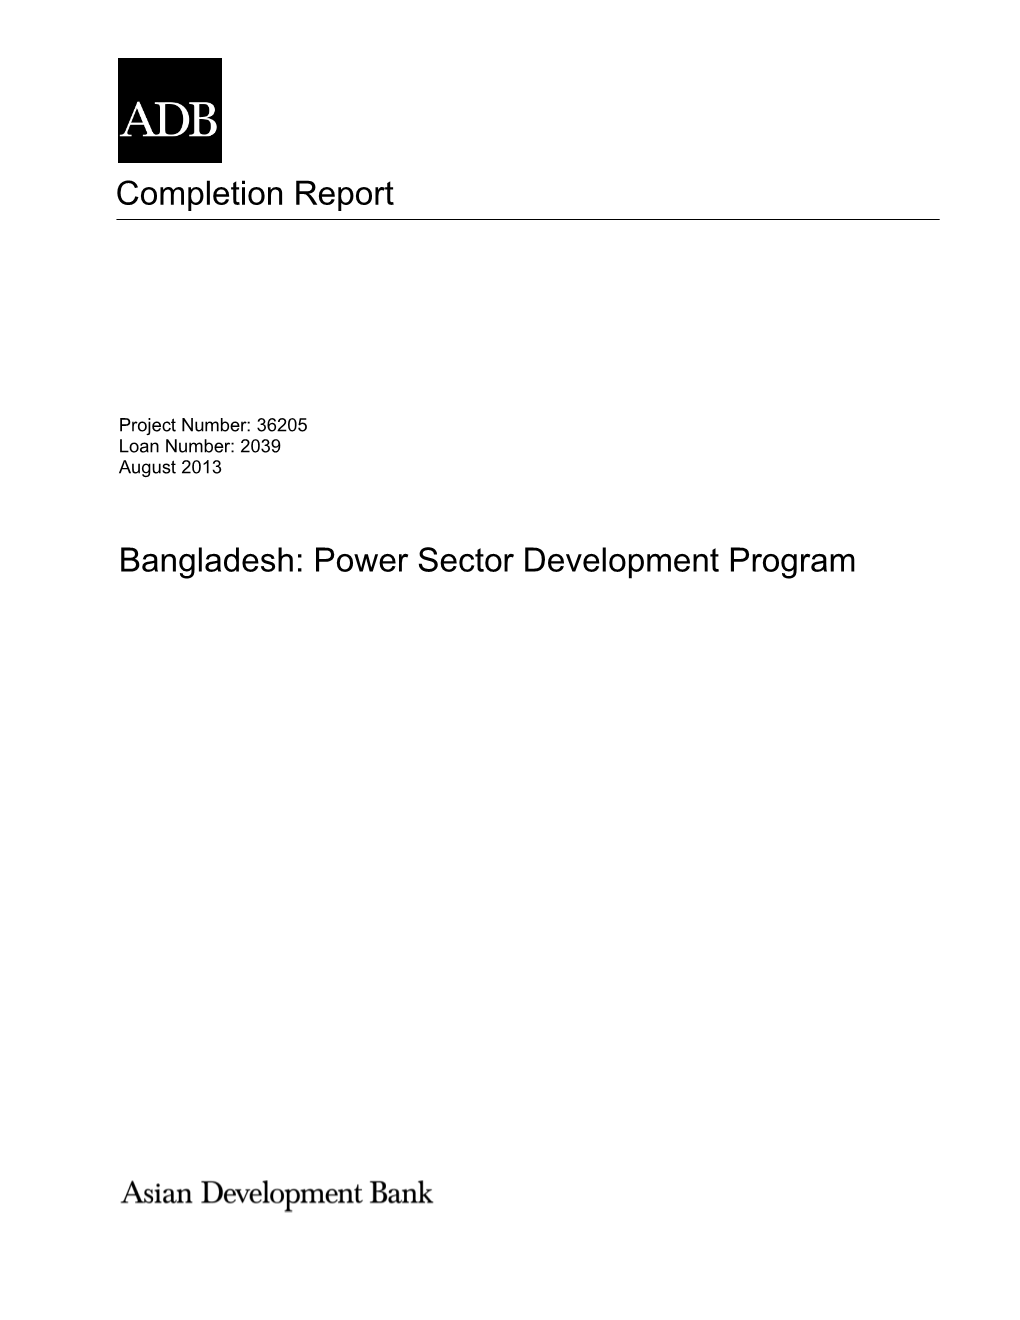 36205-013: Power Sector Development Program (Project Loan)